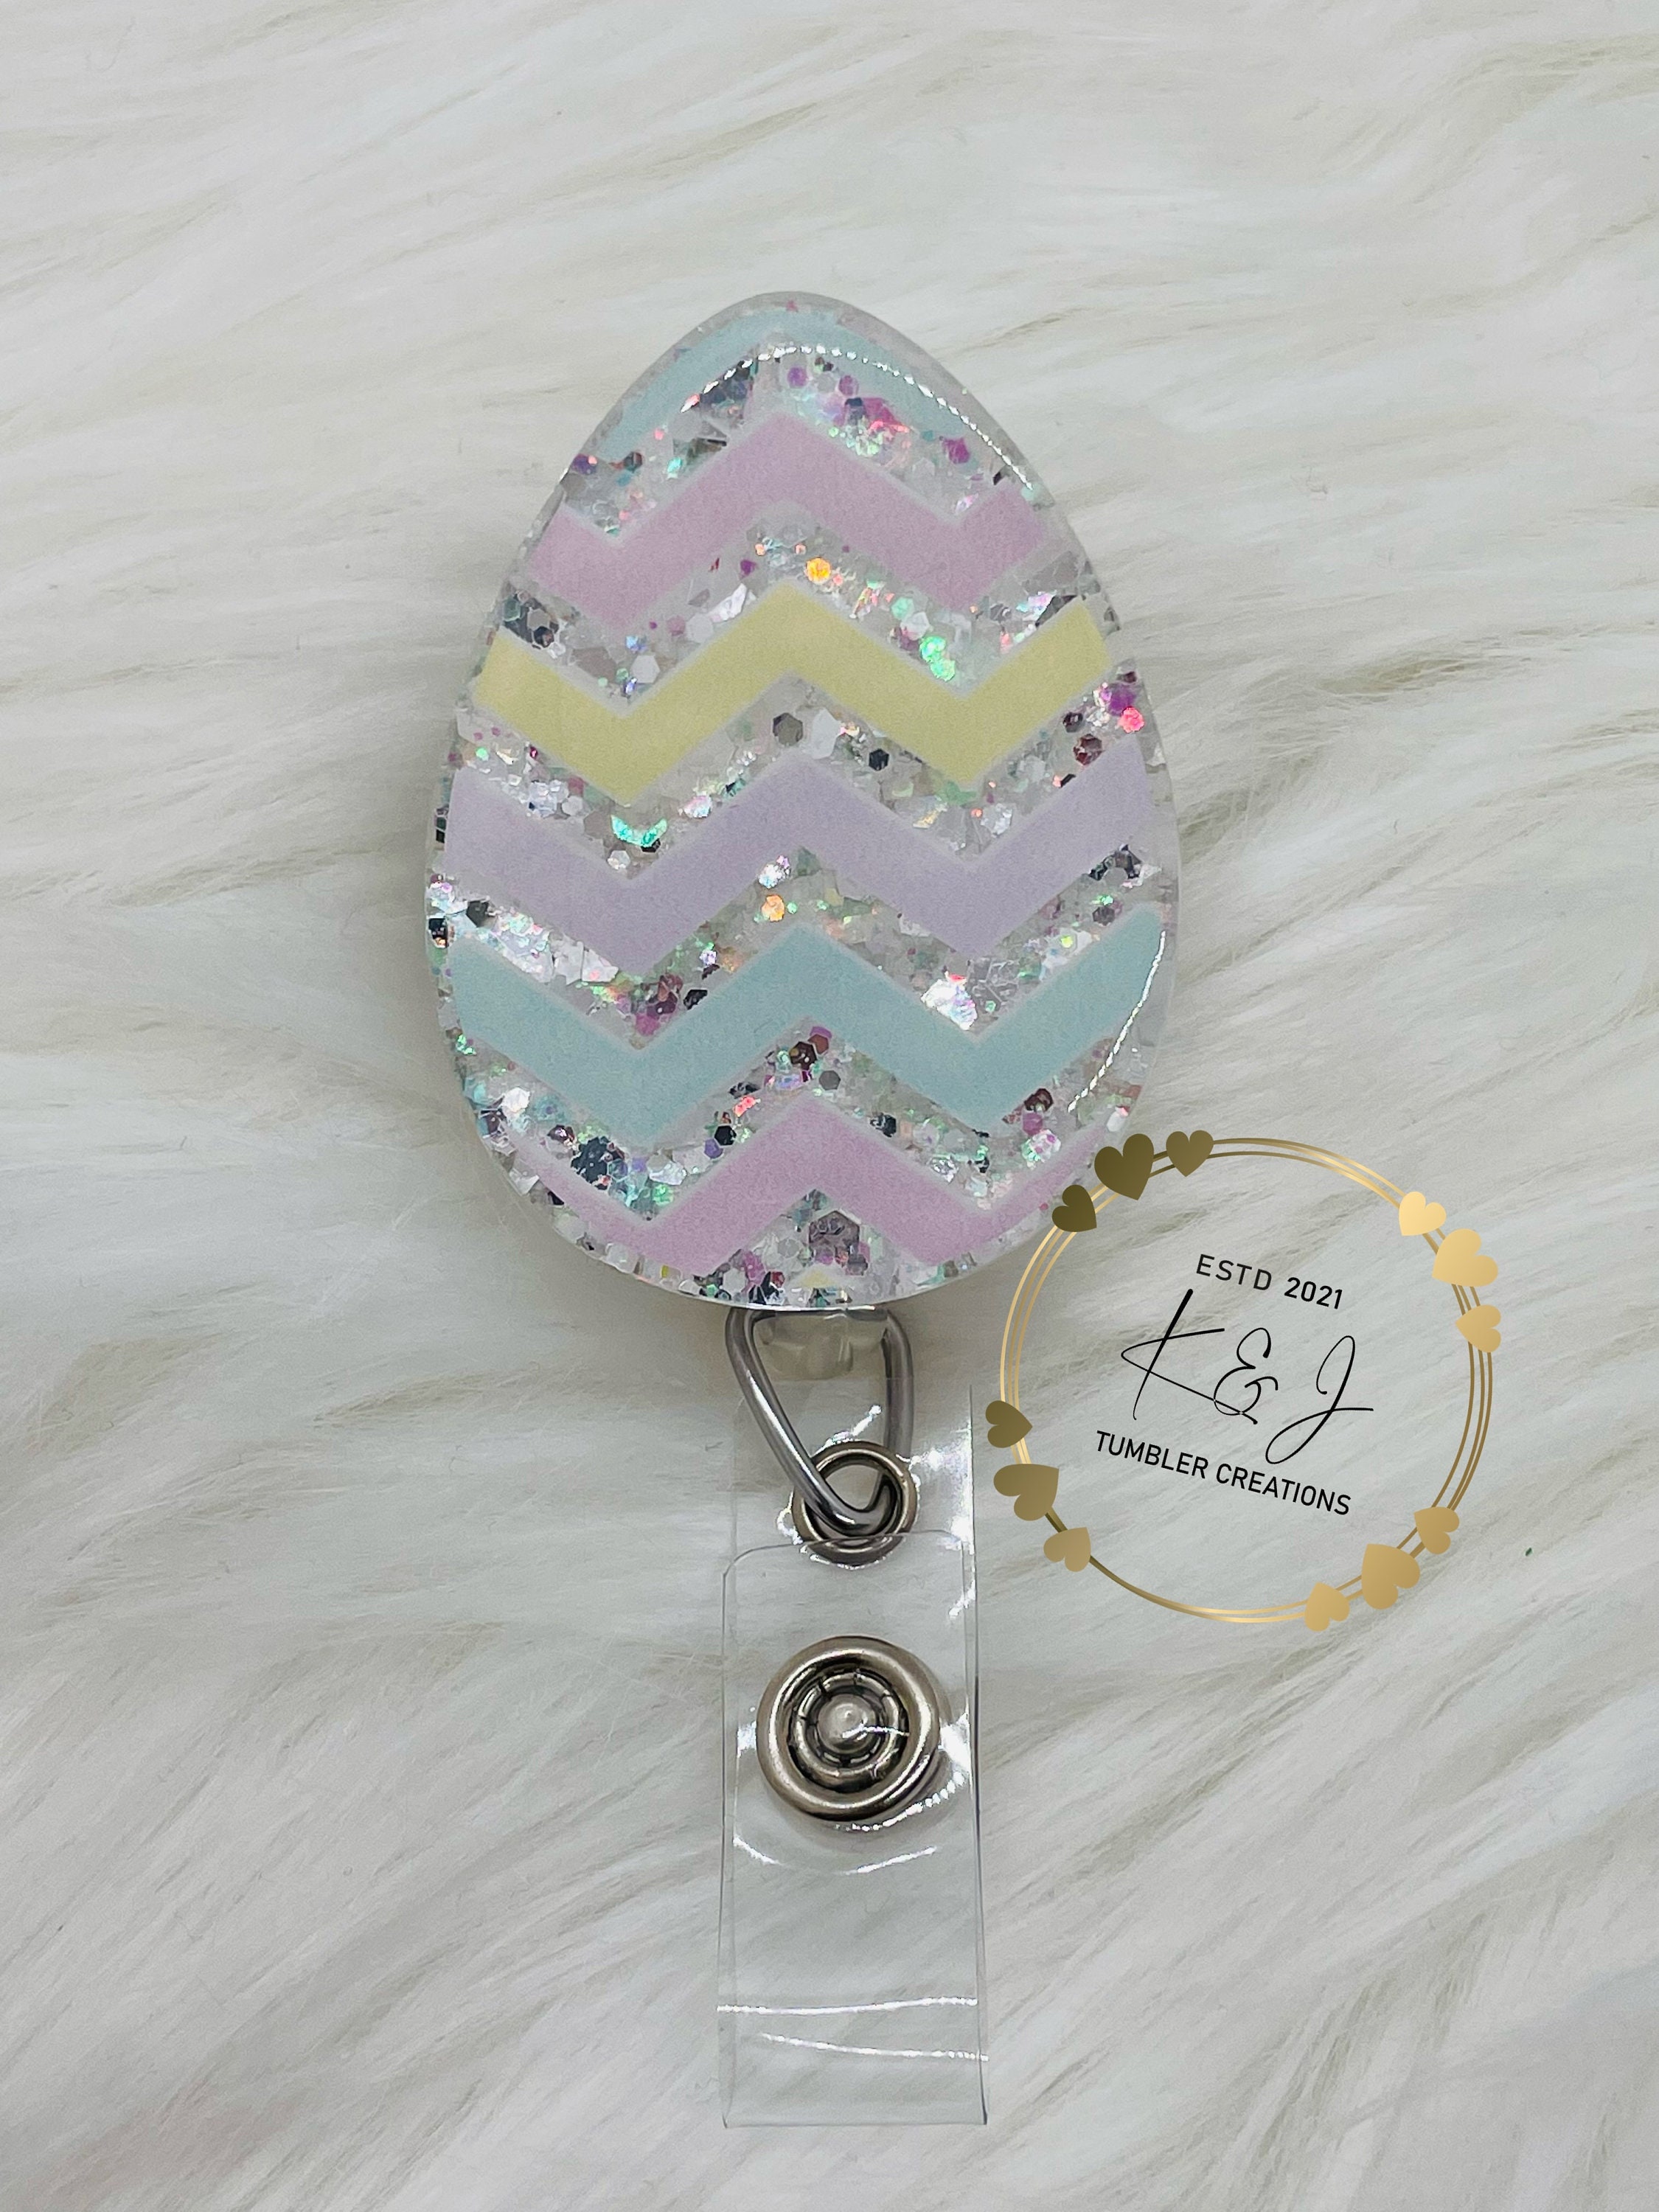 Easter Egg Badge Reel 